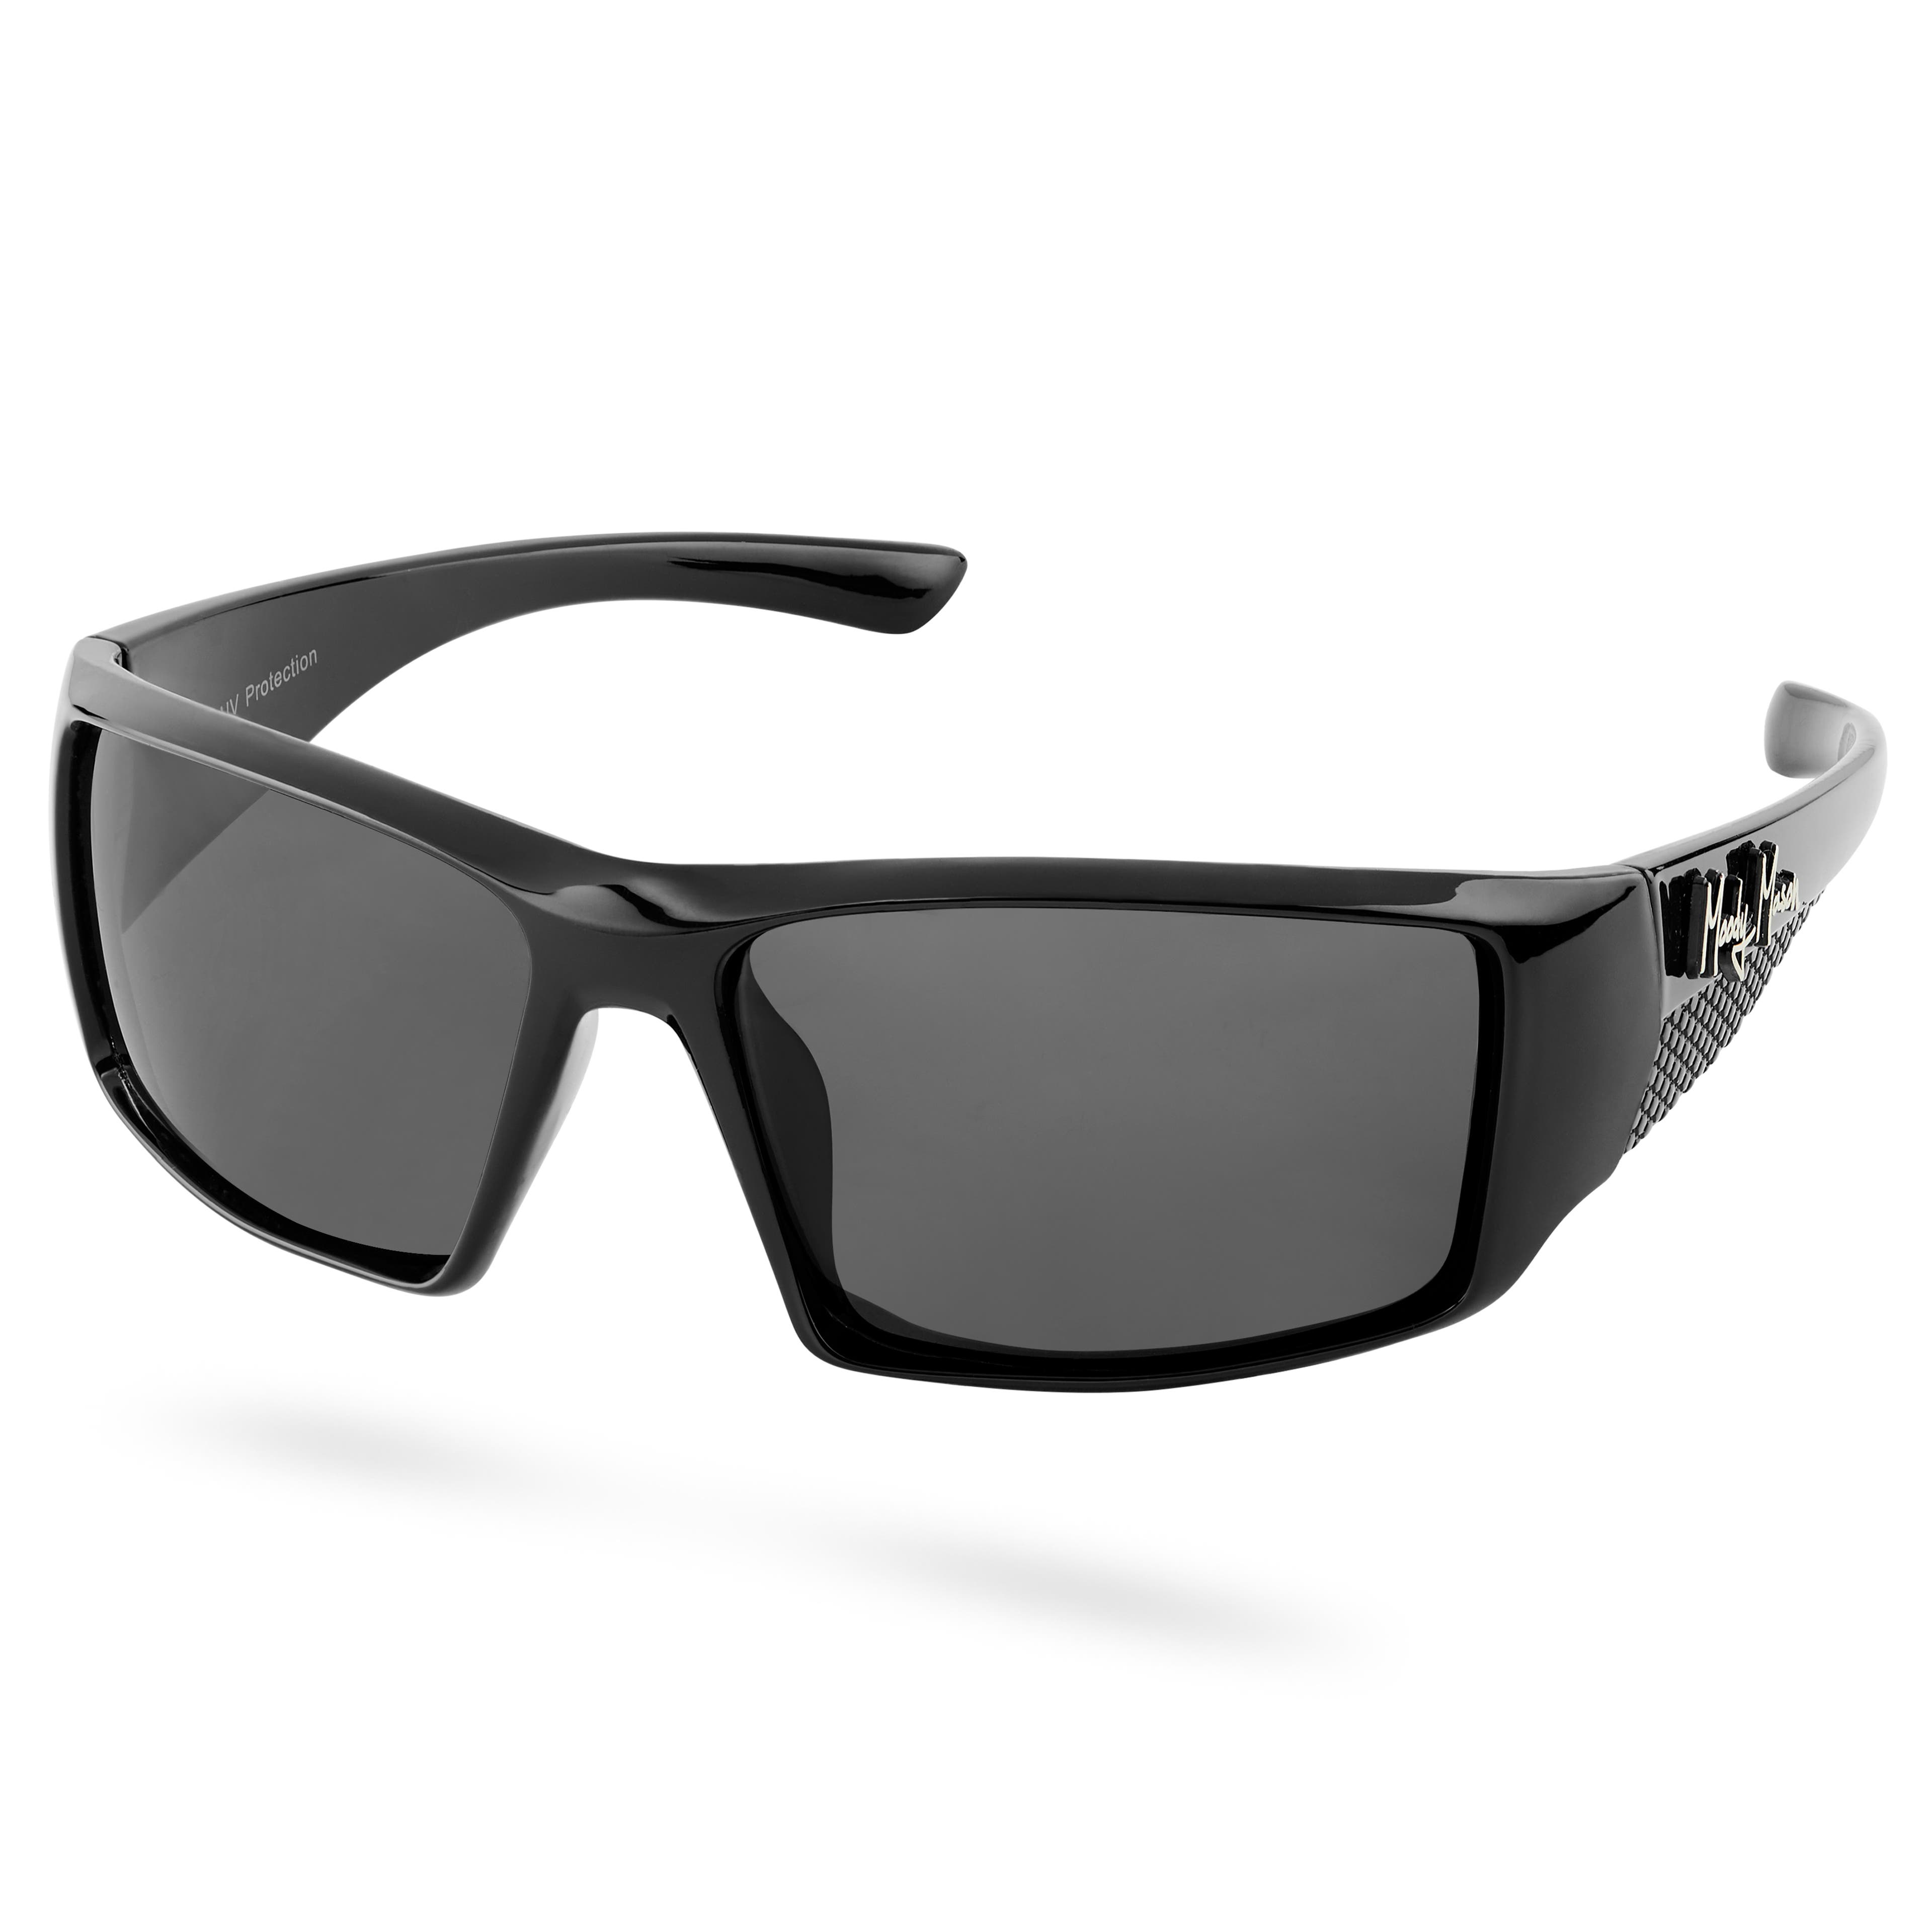 Gafas de sol polarizadas categoría 3,5 en negro y gris Verge Mick